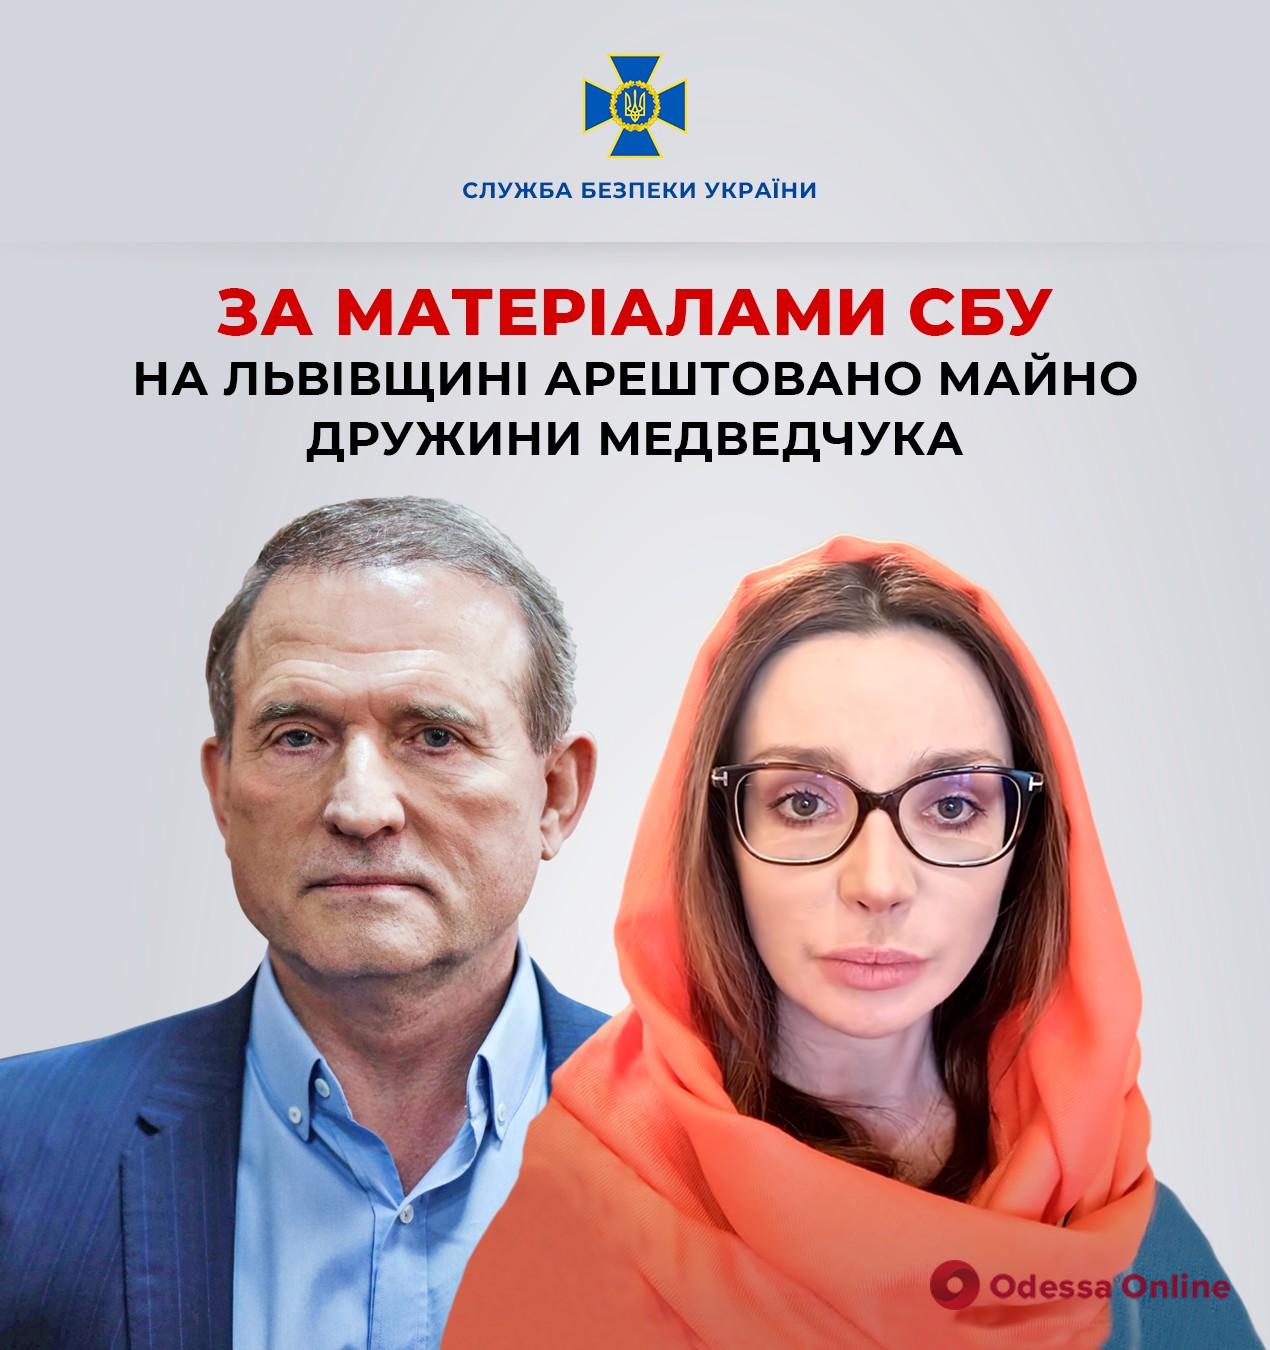 СБУ: во Львовской области арестовано имущество жены Медведчука